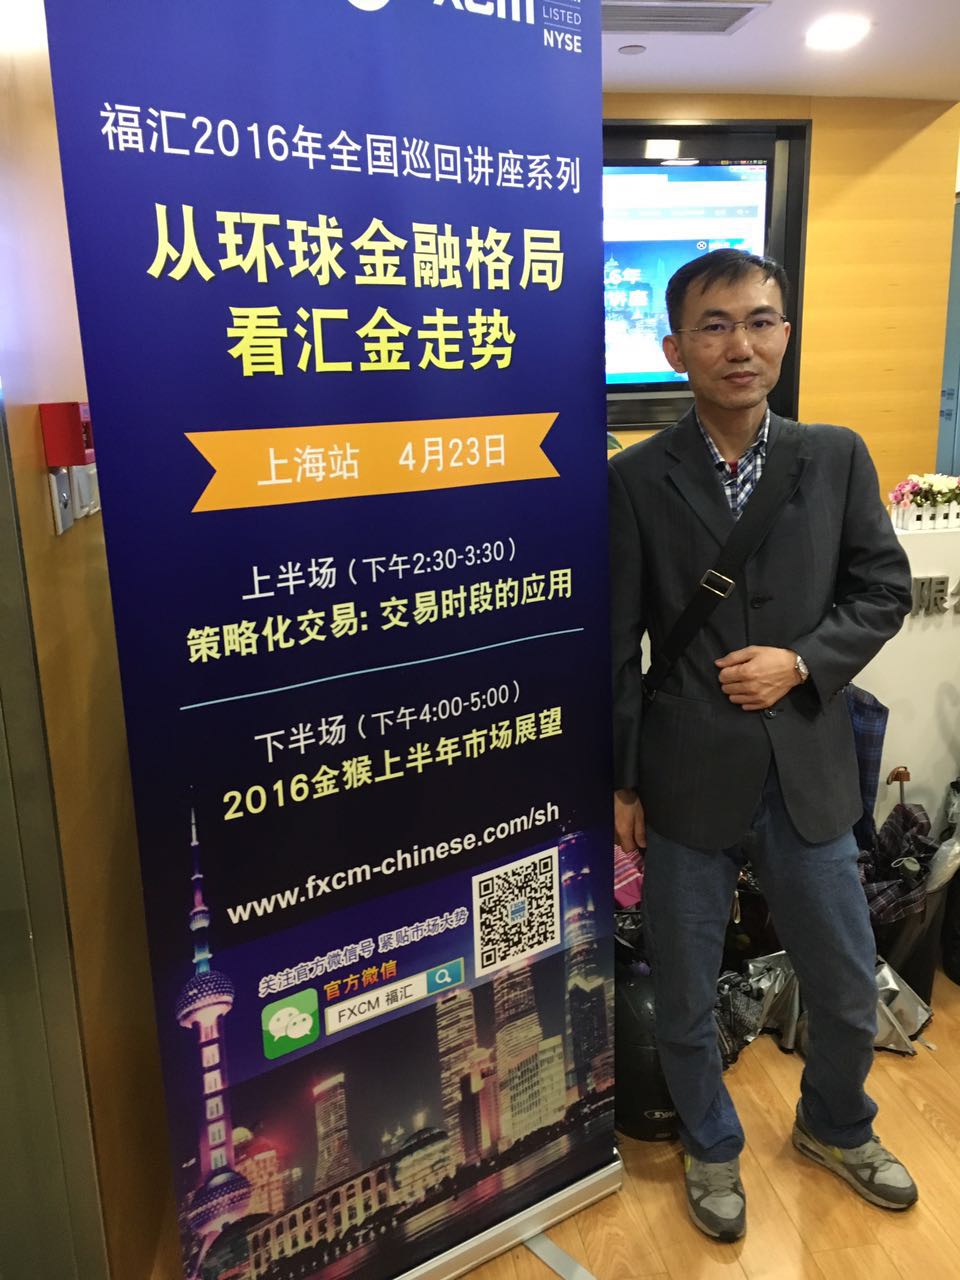 应福汇FXCM(上海)中心邀请:《从环球金融格局看汇金走势》2